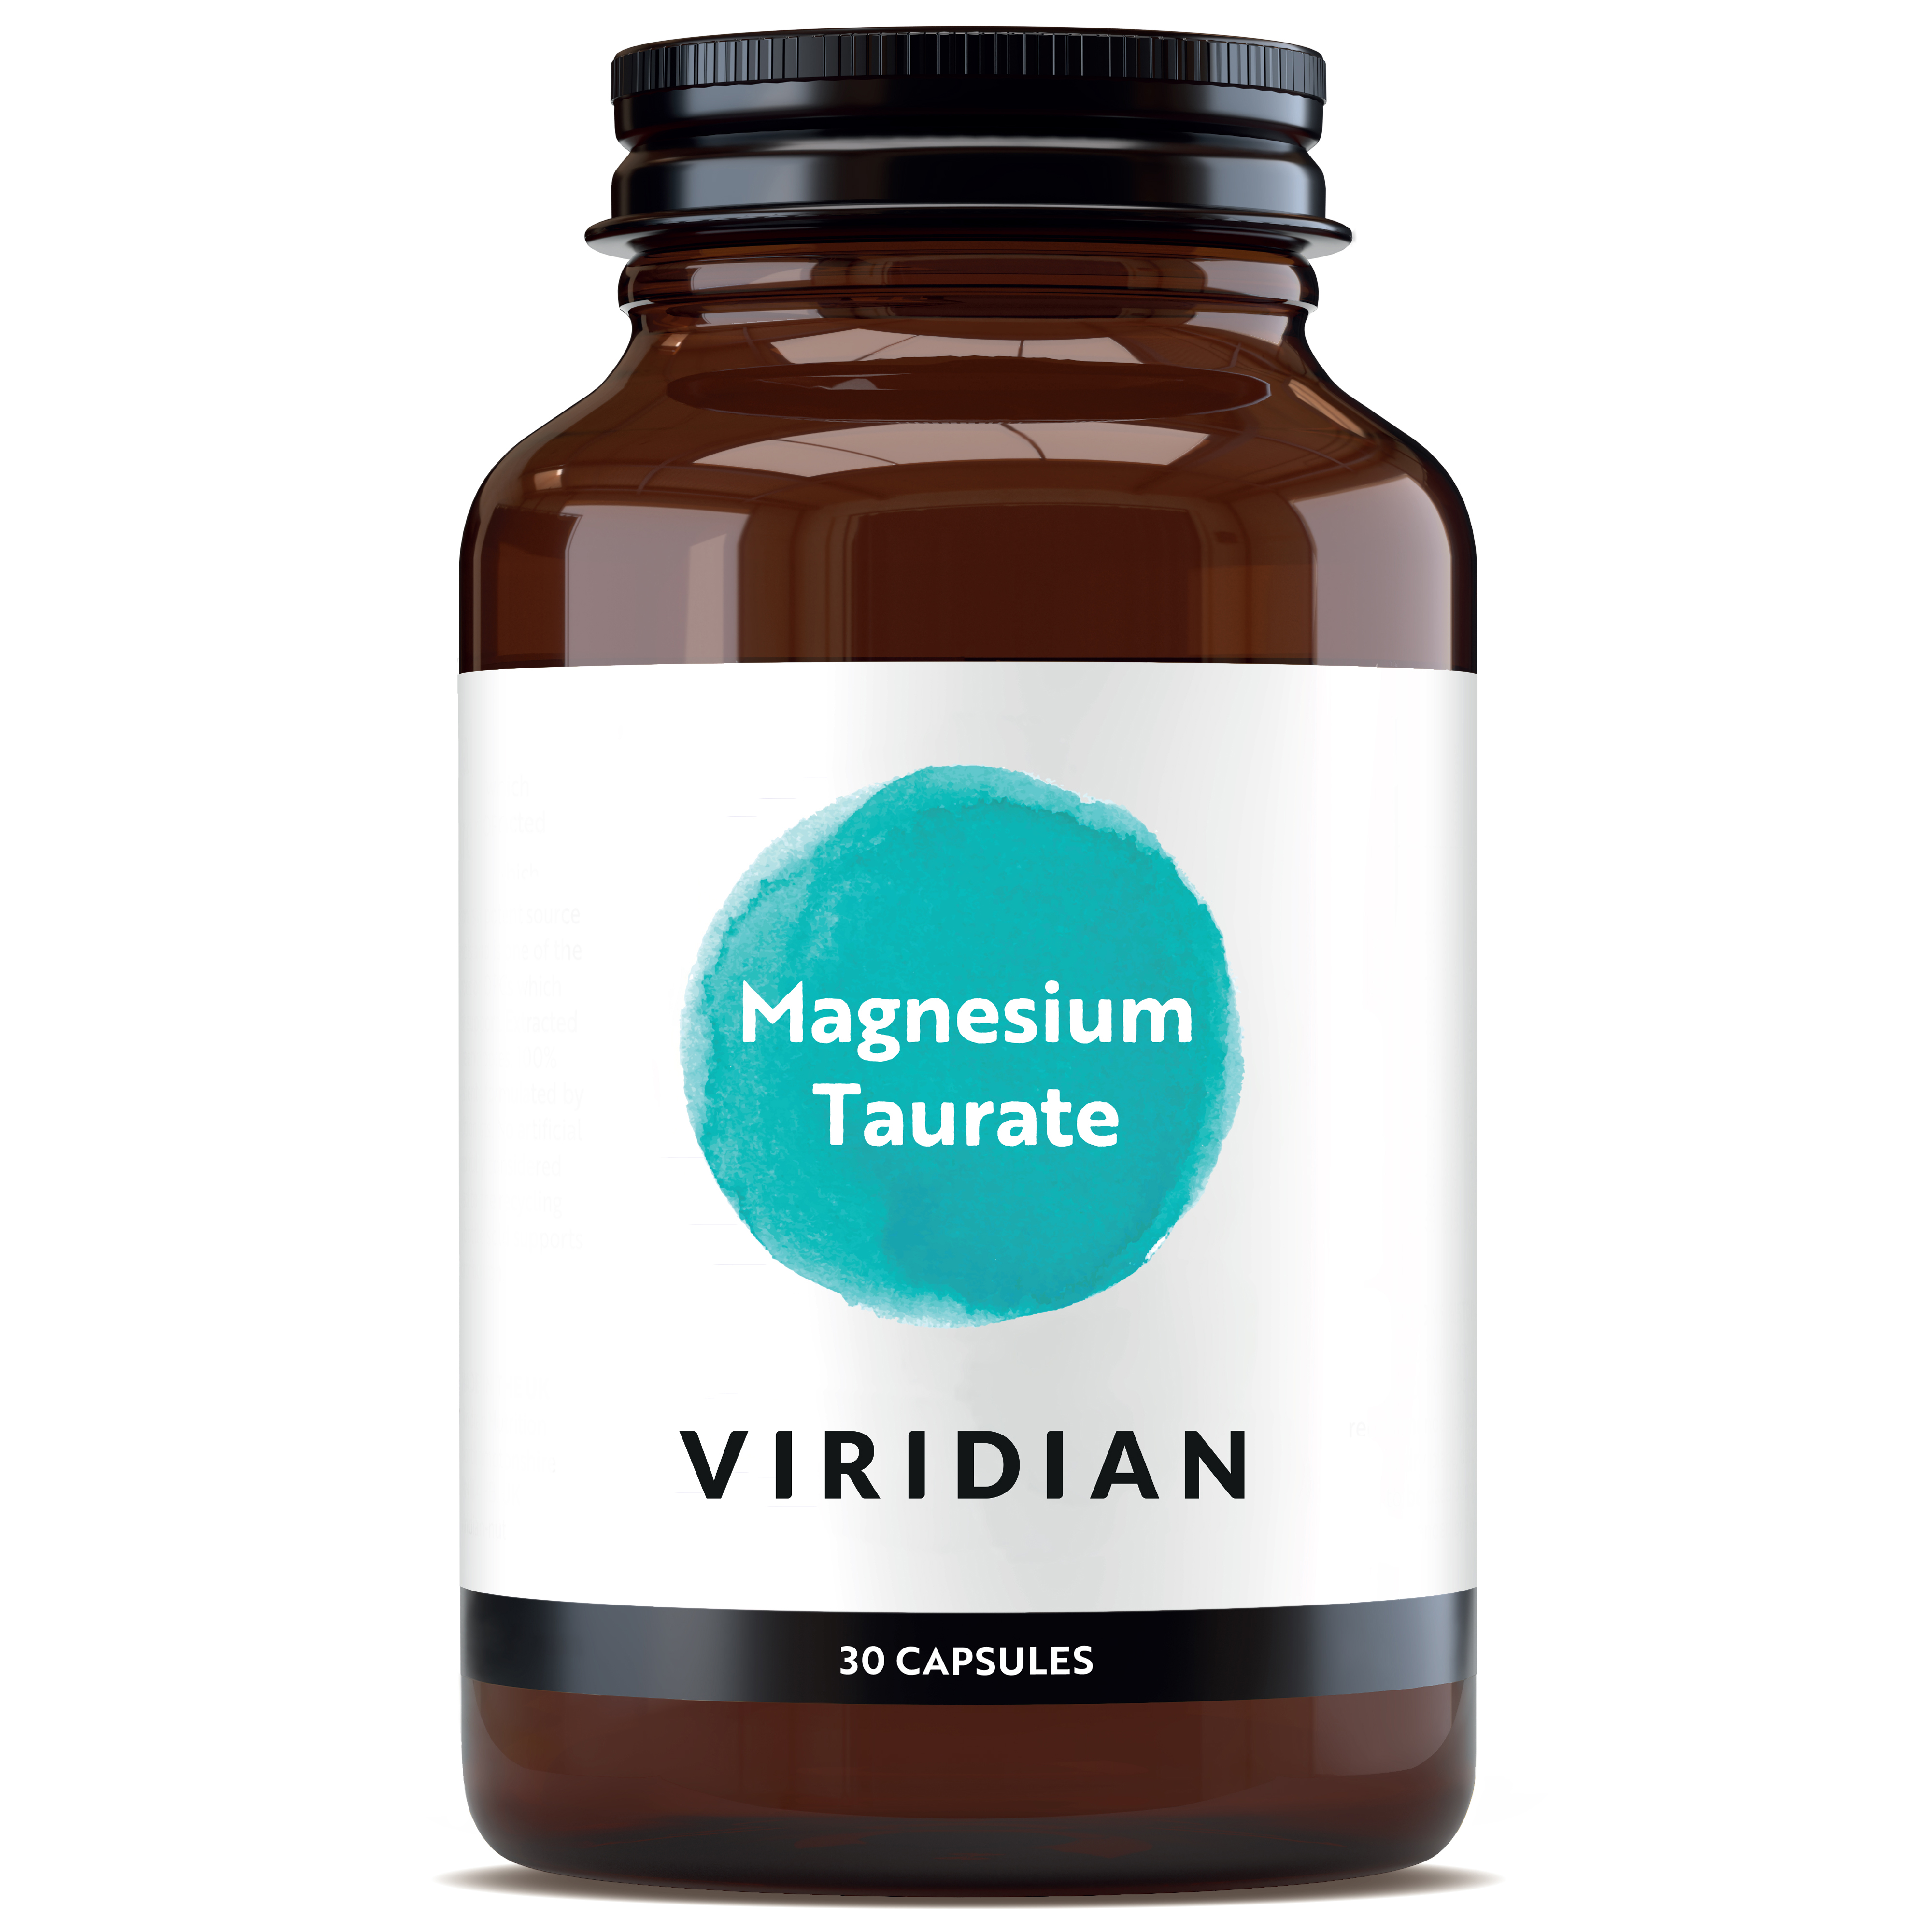 VIRIDIAN Magnesiumtaurat-Tabletten enthalten 112 mg pro Zwei-Tabletten-Dosis